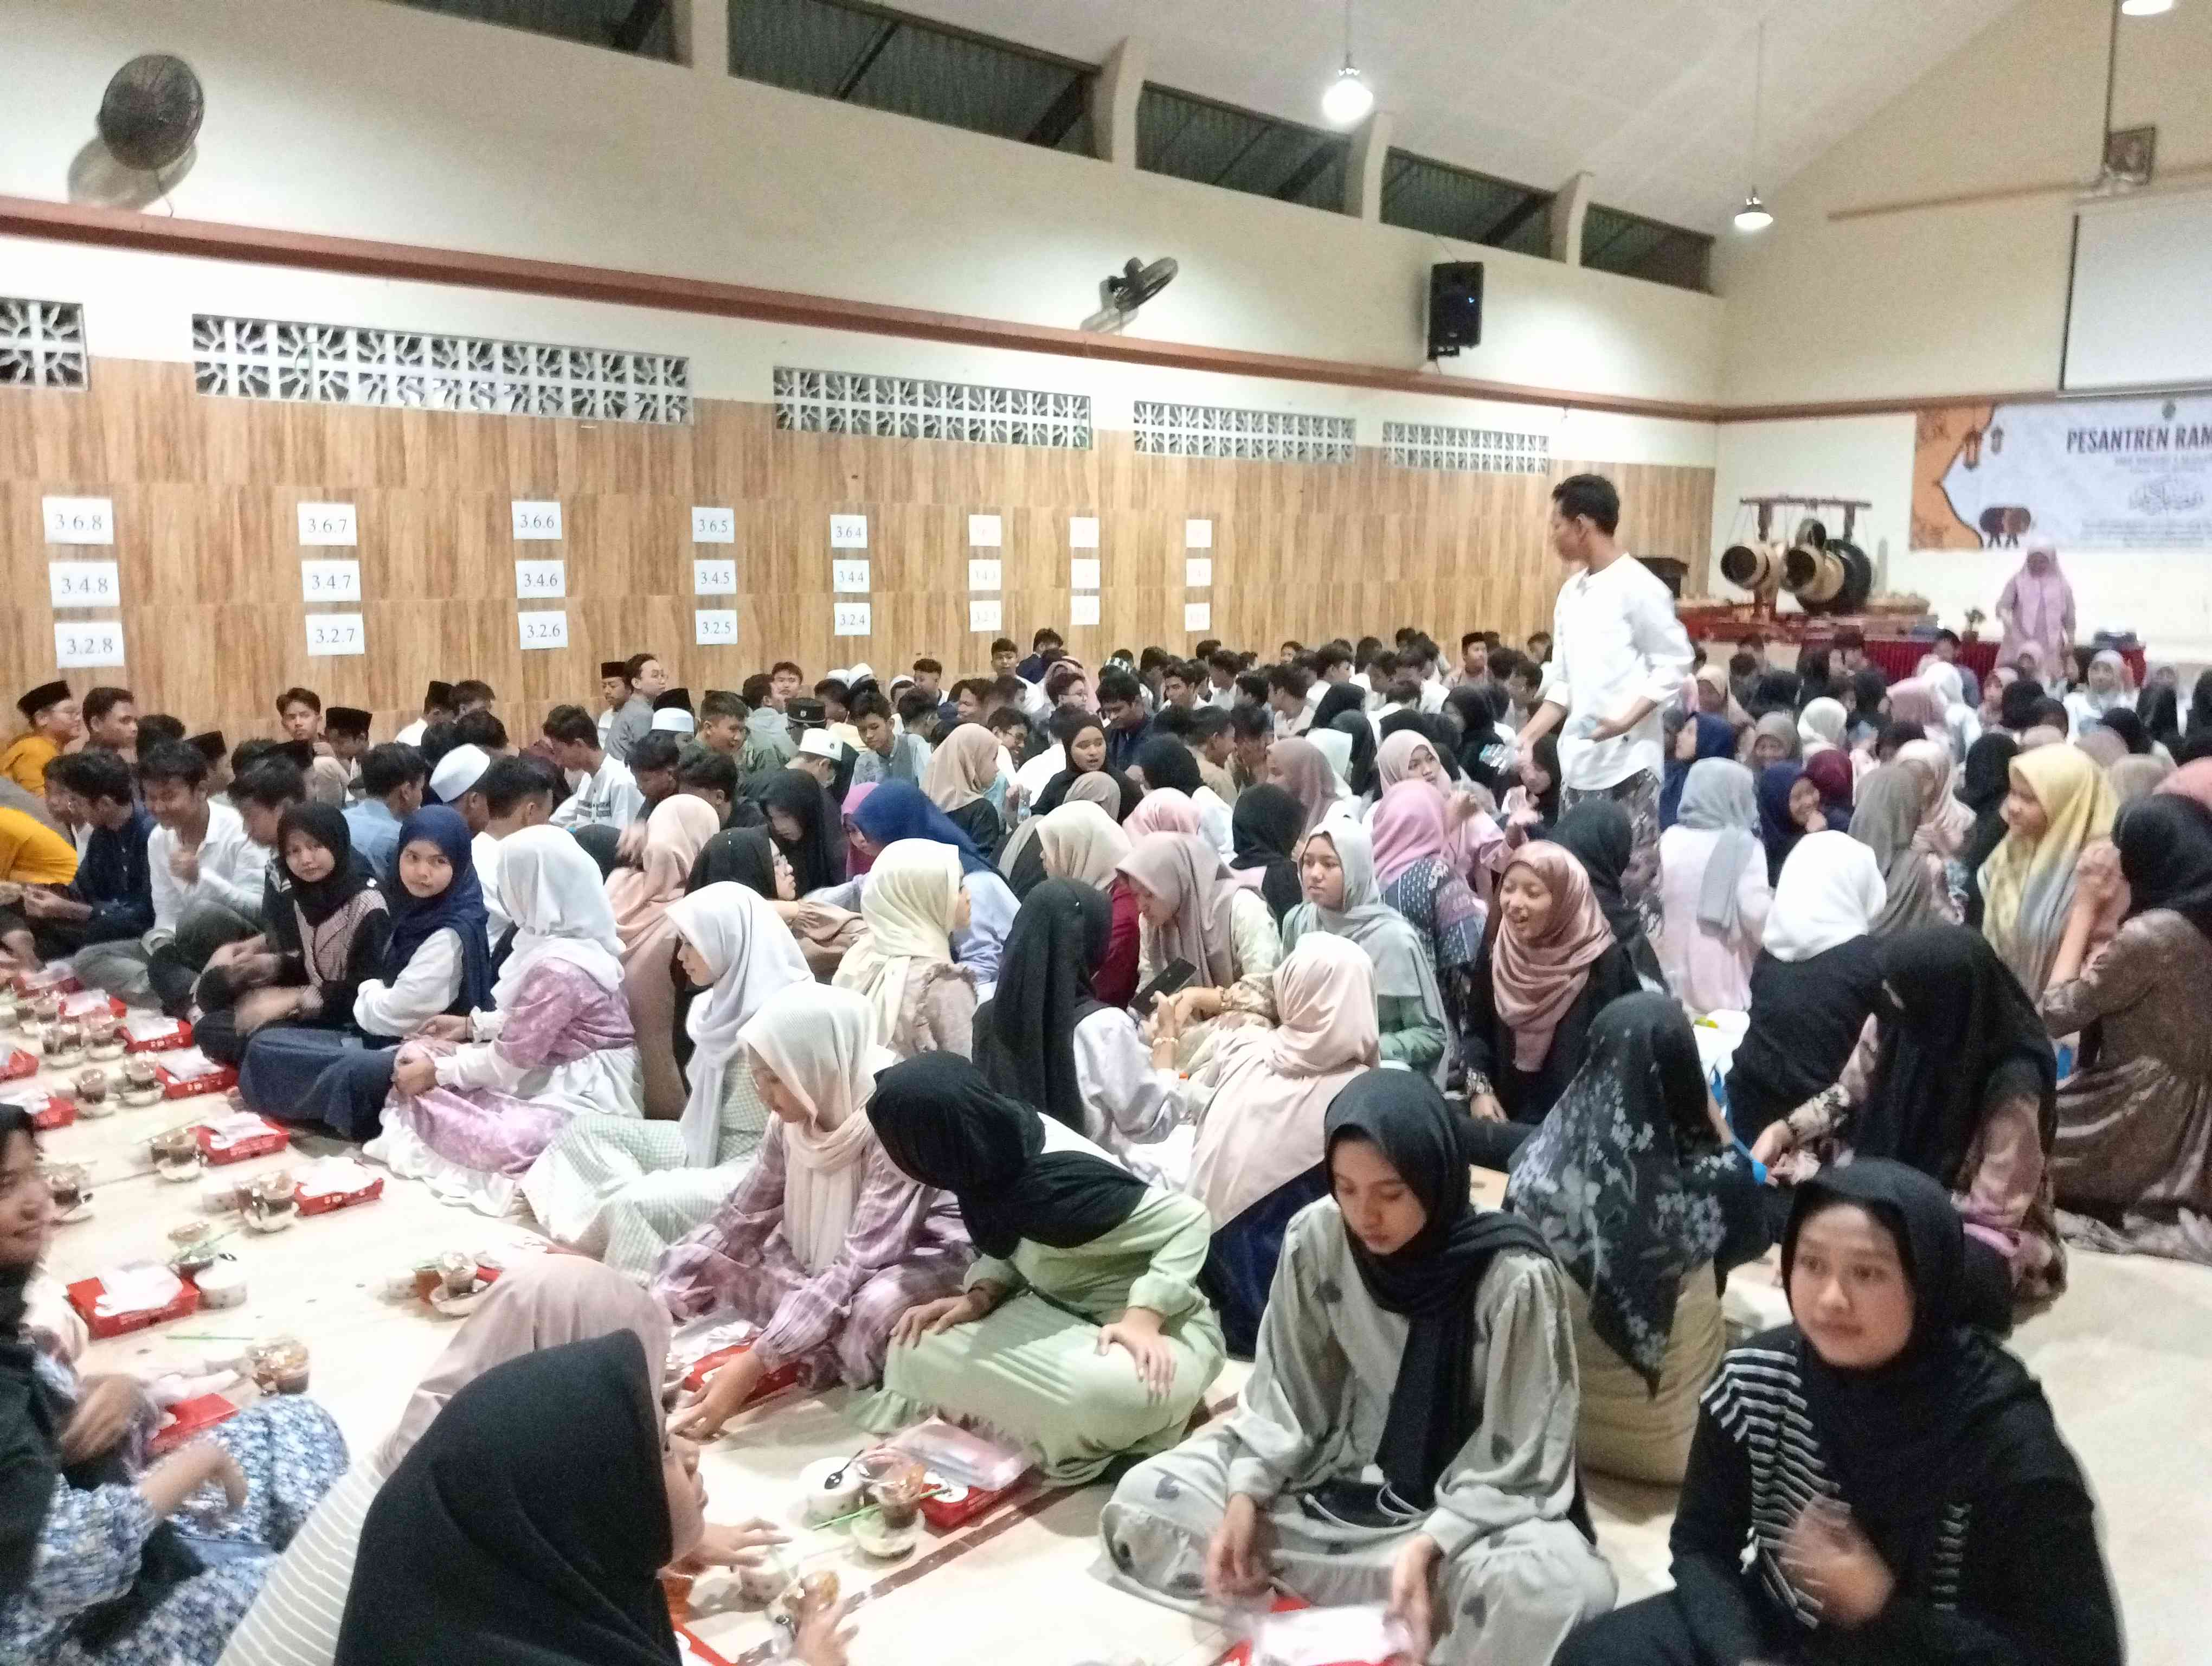 Pesantren Ramadhan dan Pondok Kasih, Ceria Ramadhan dalam Bingkai Moderasi Beragama